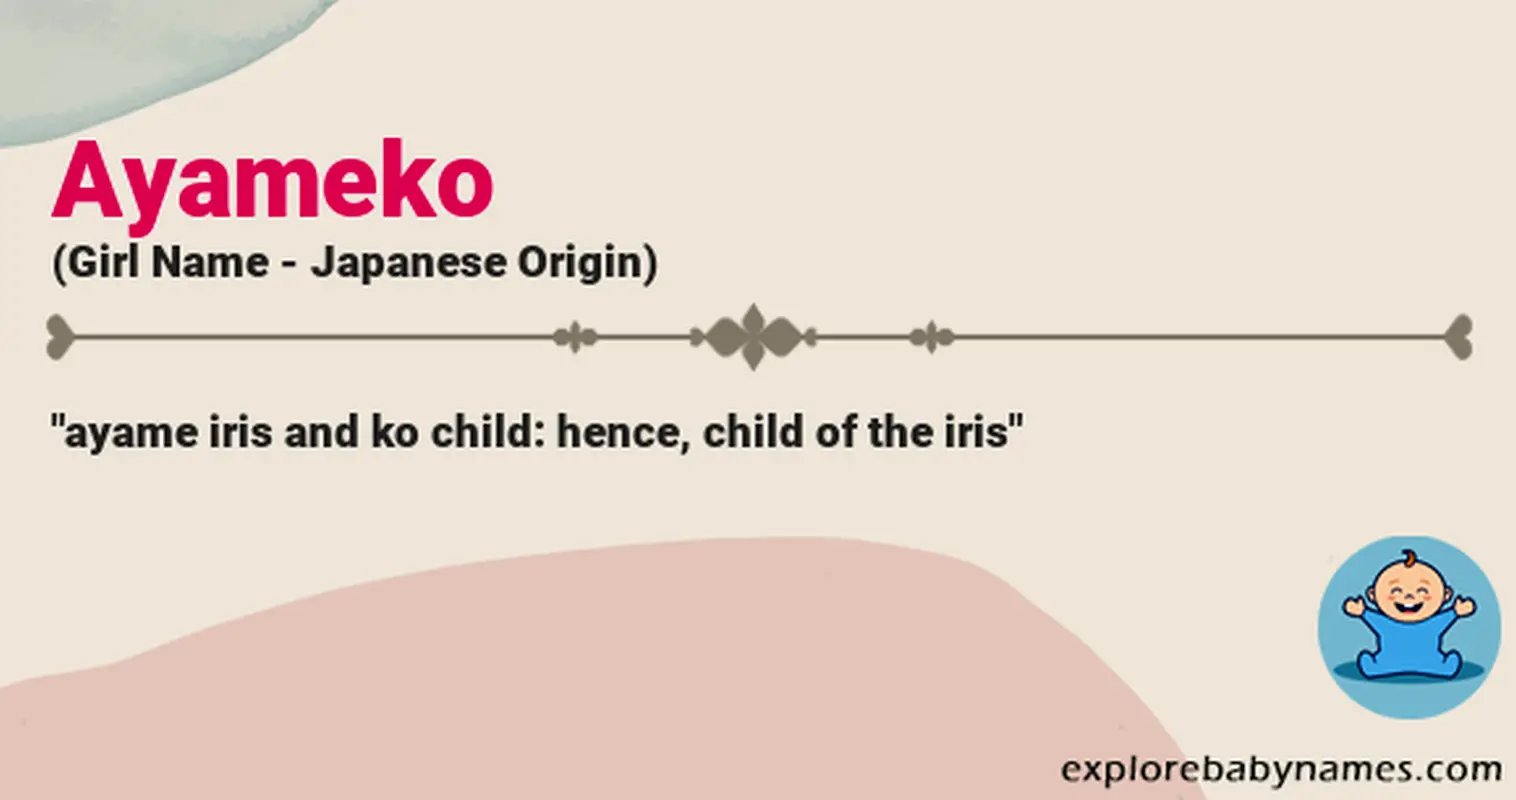 Meaning of Ayameko